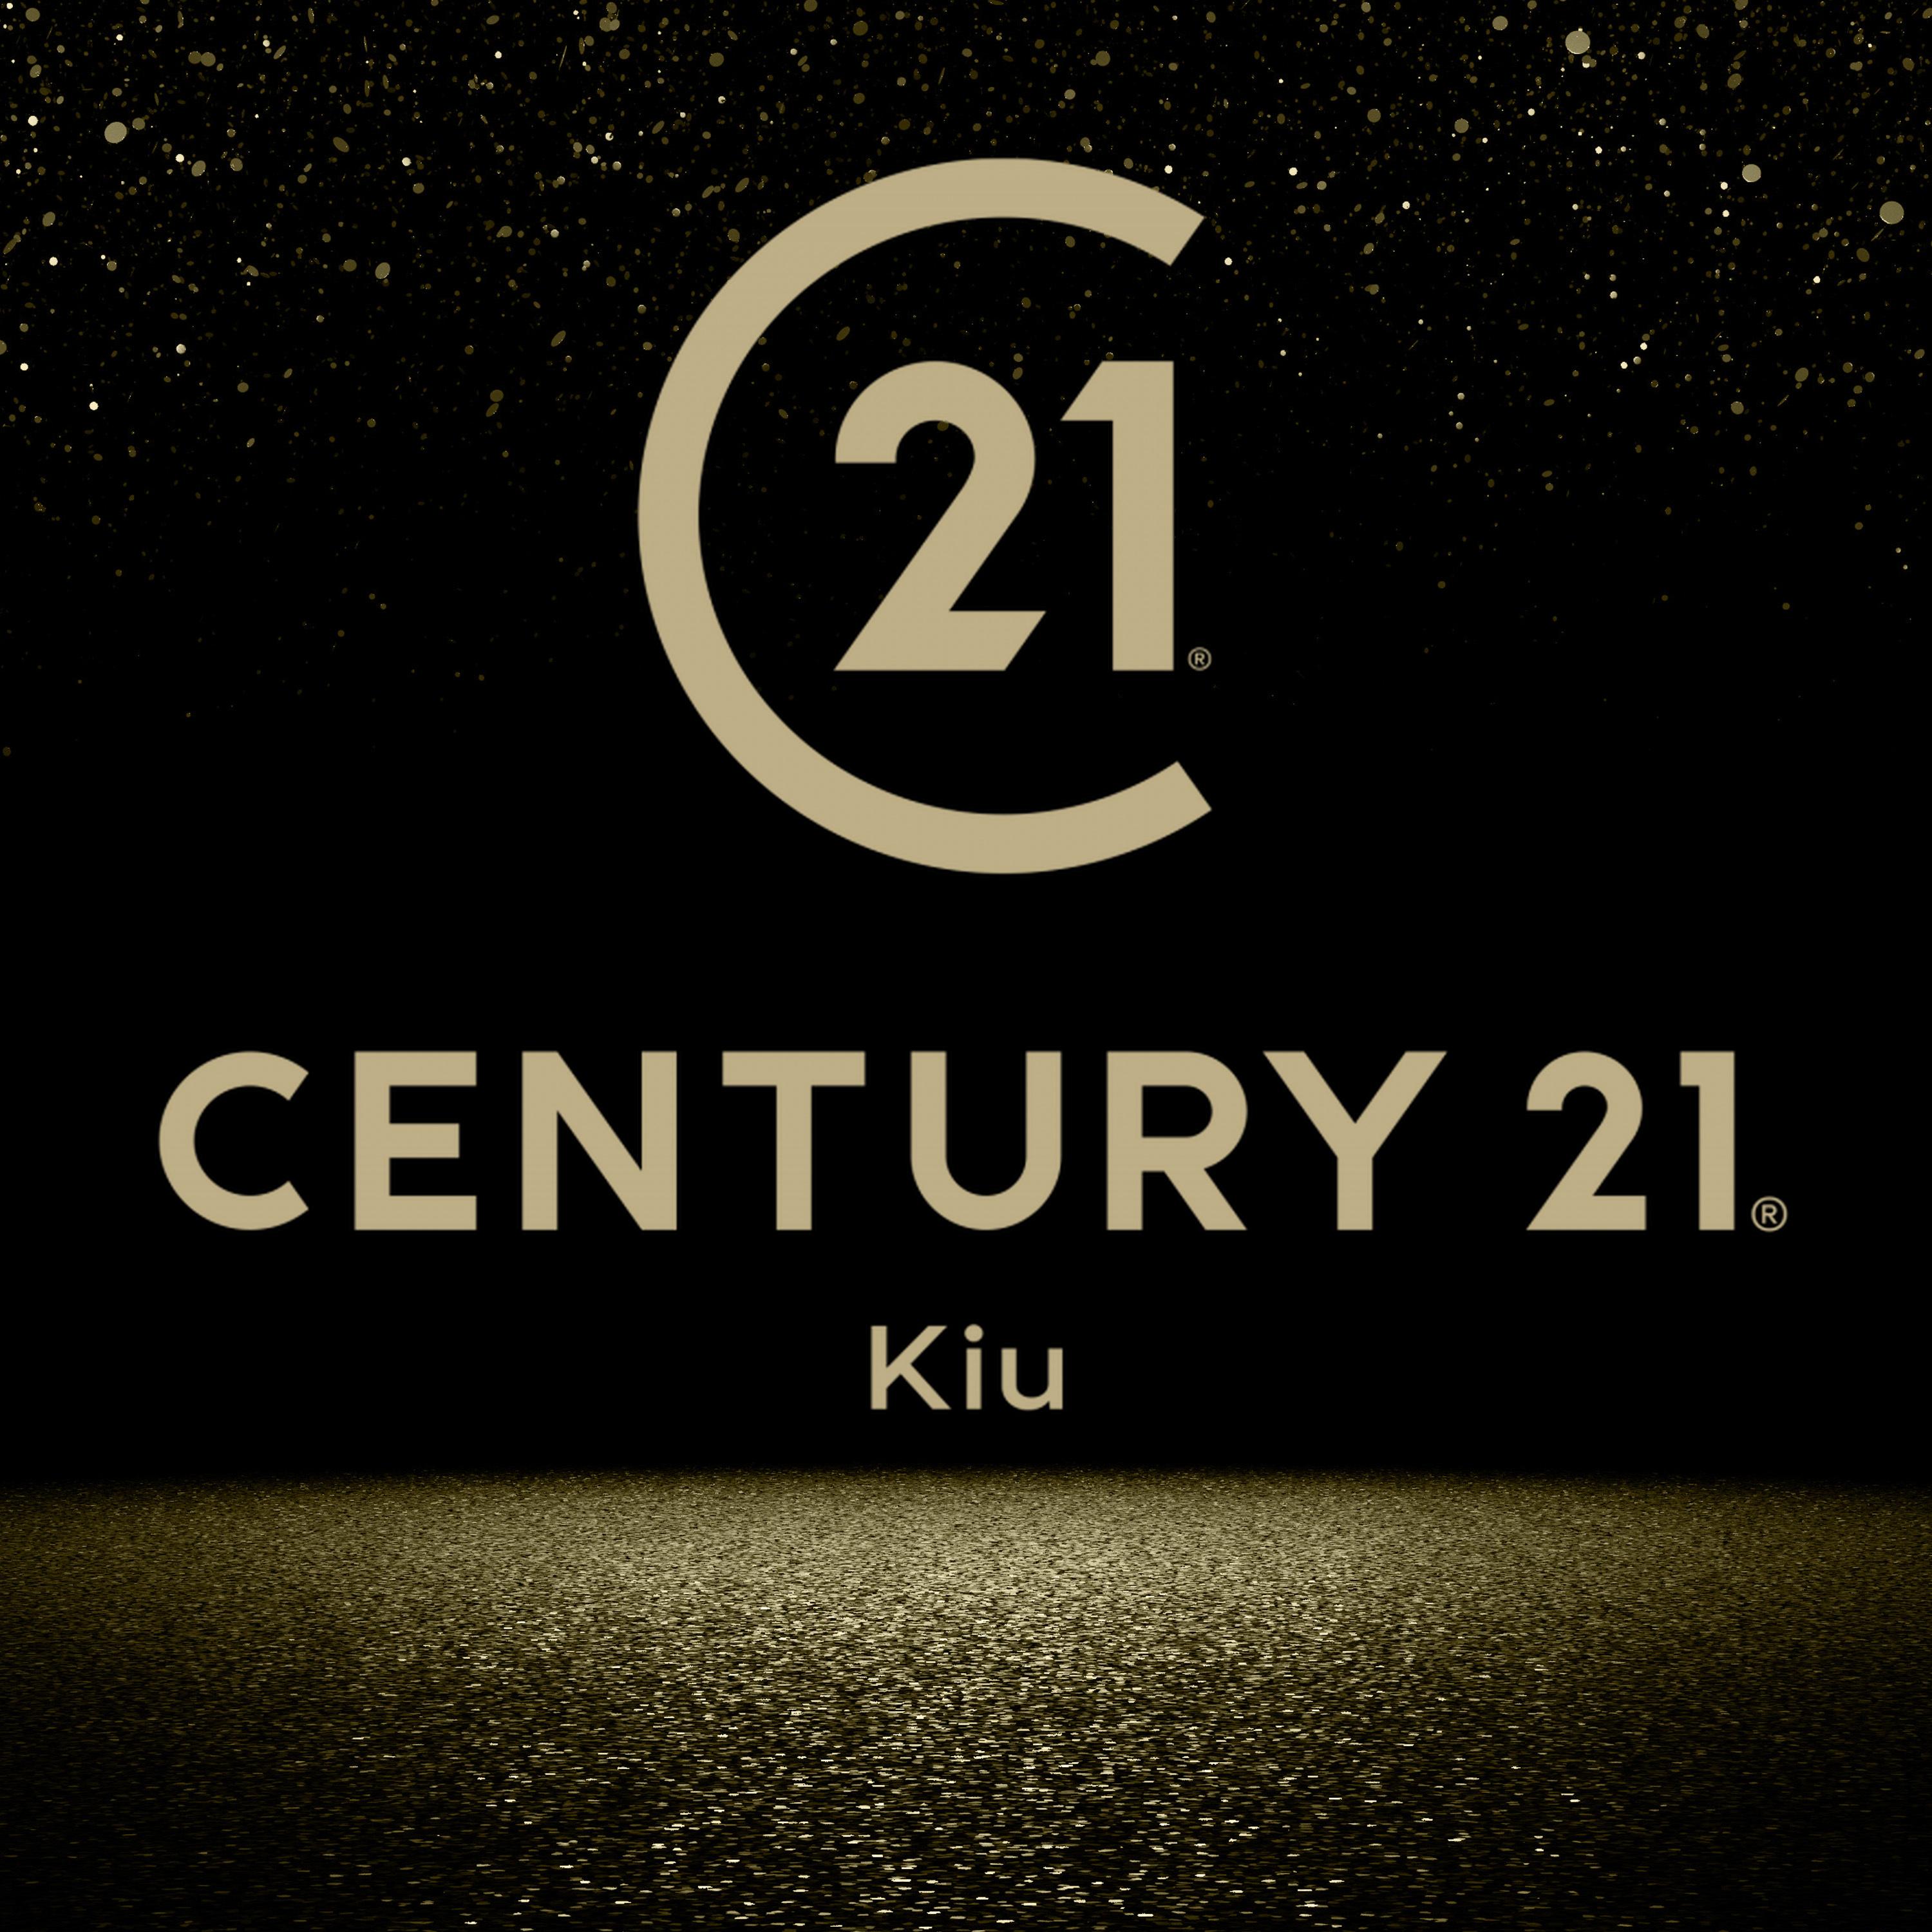 century 21 kiu